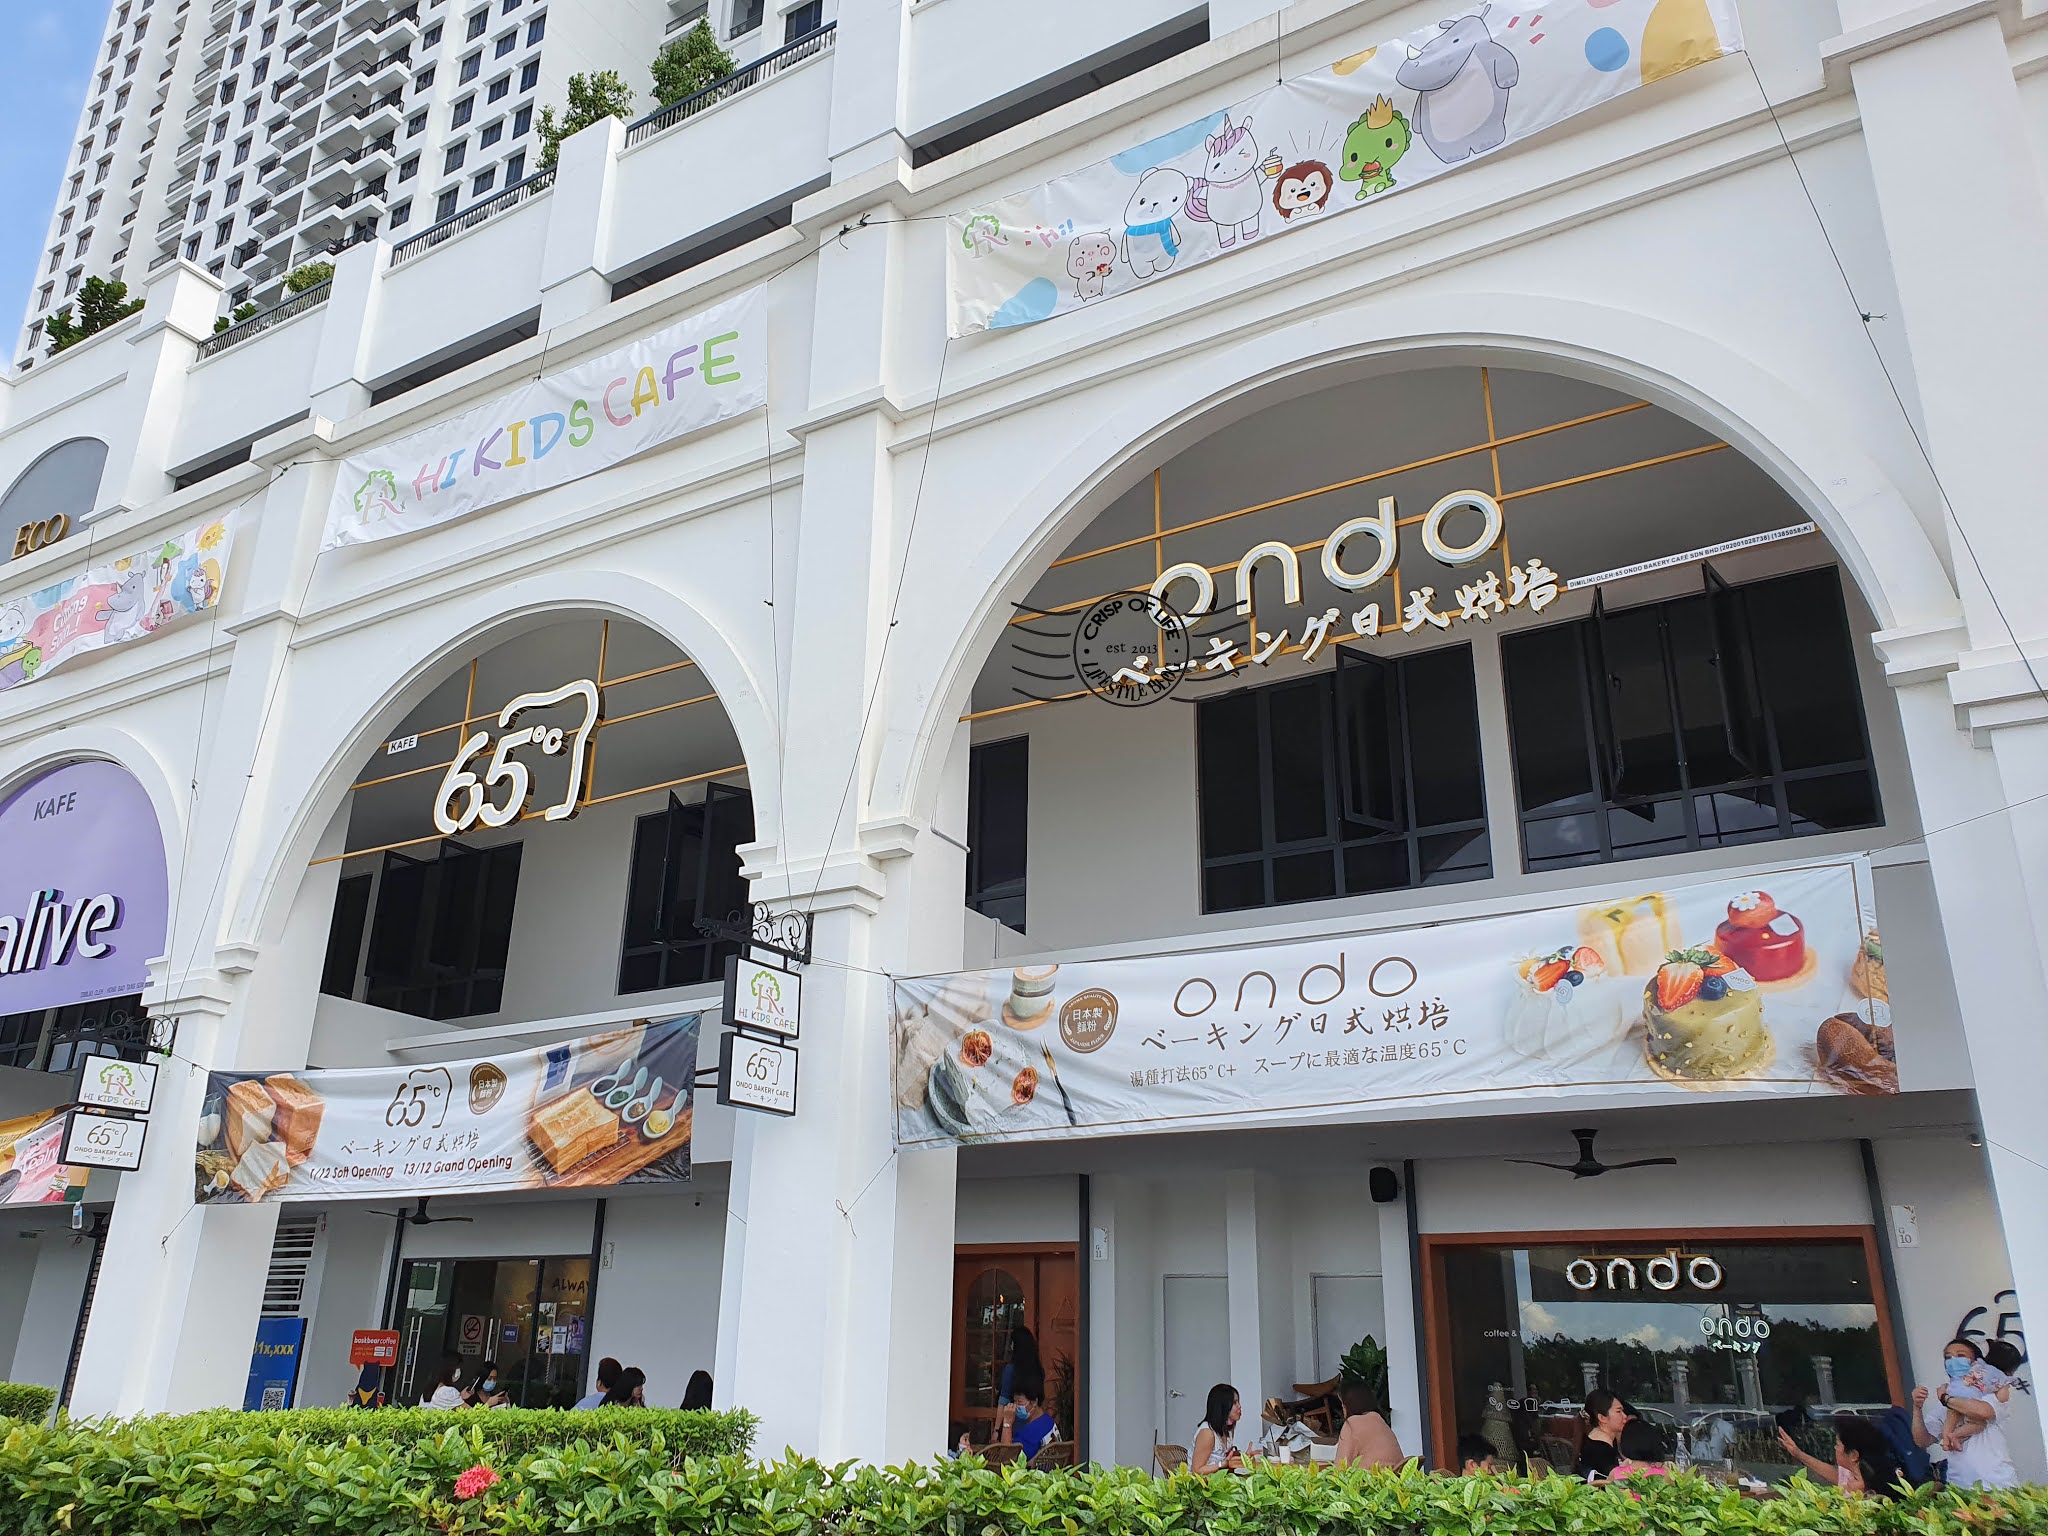 65 Ondo Bakery Cafe @ Eco Bloom, Simpang Ampat, Penang